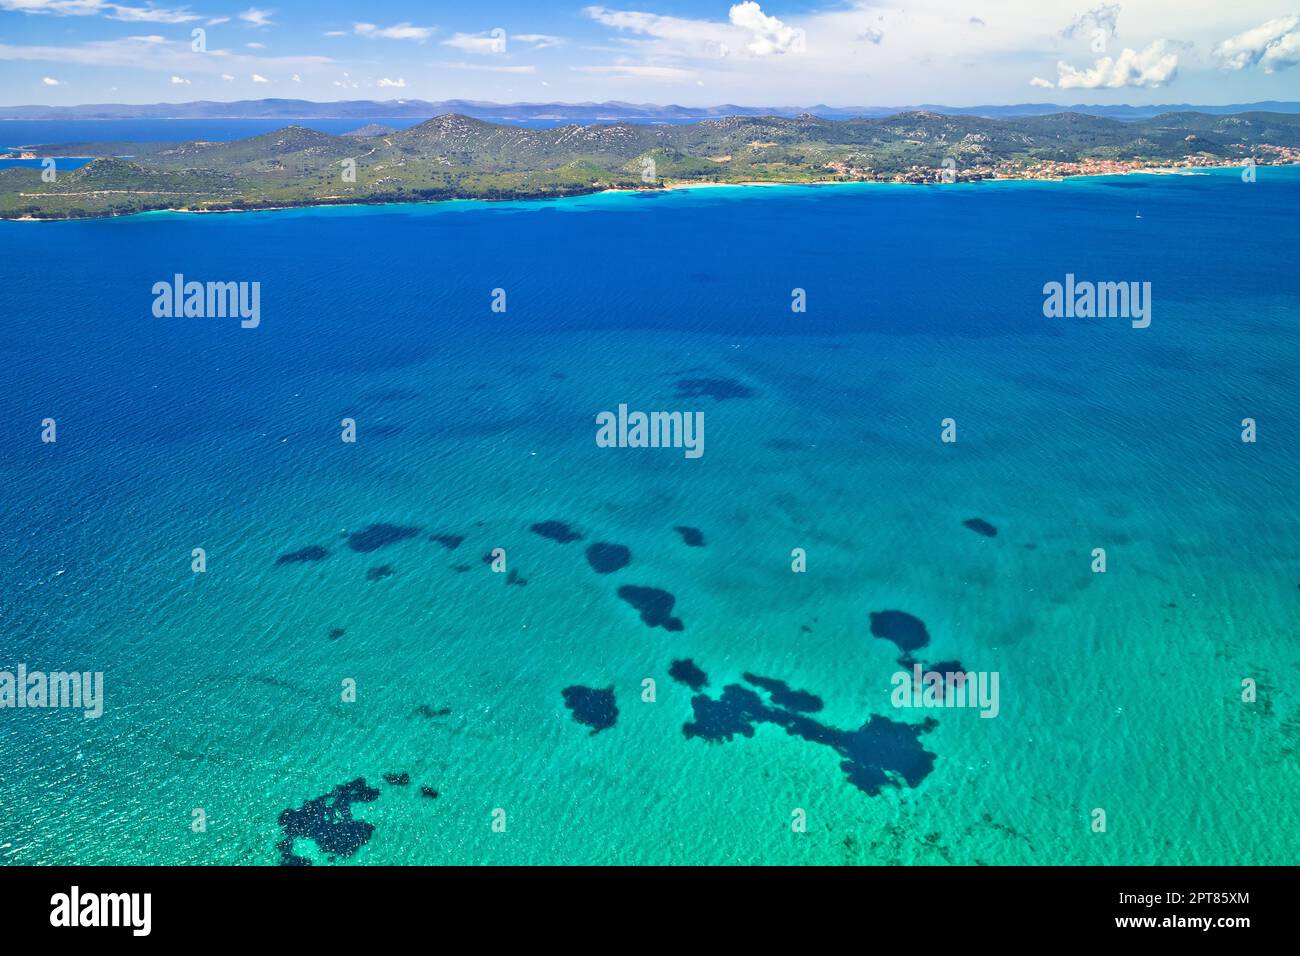 Île de Pasman et vue aérienne sur la mer turquoise, archipel de Dalmatie en Croatie Banque D'Images